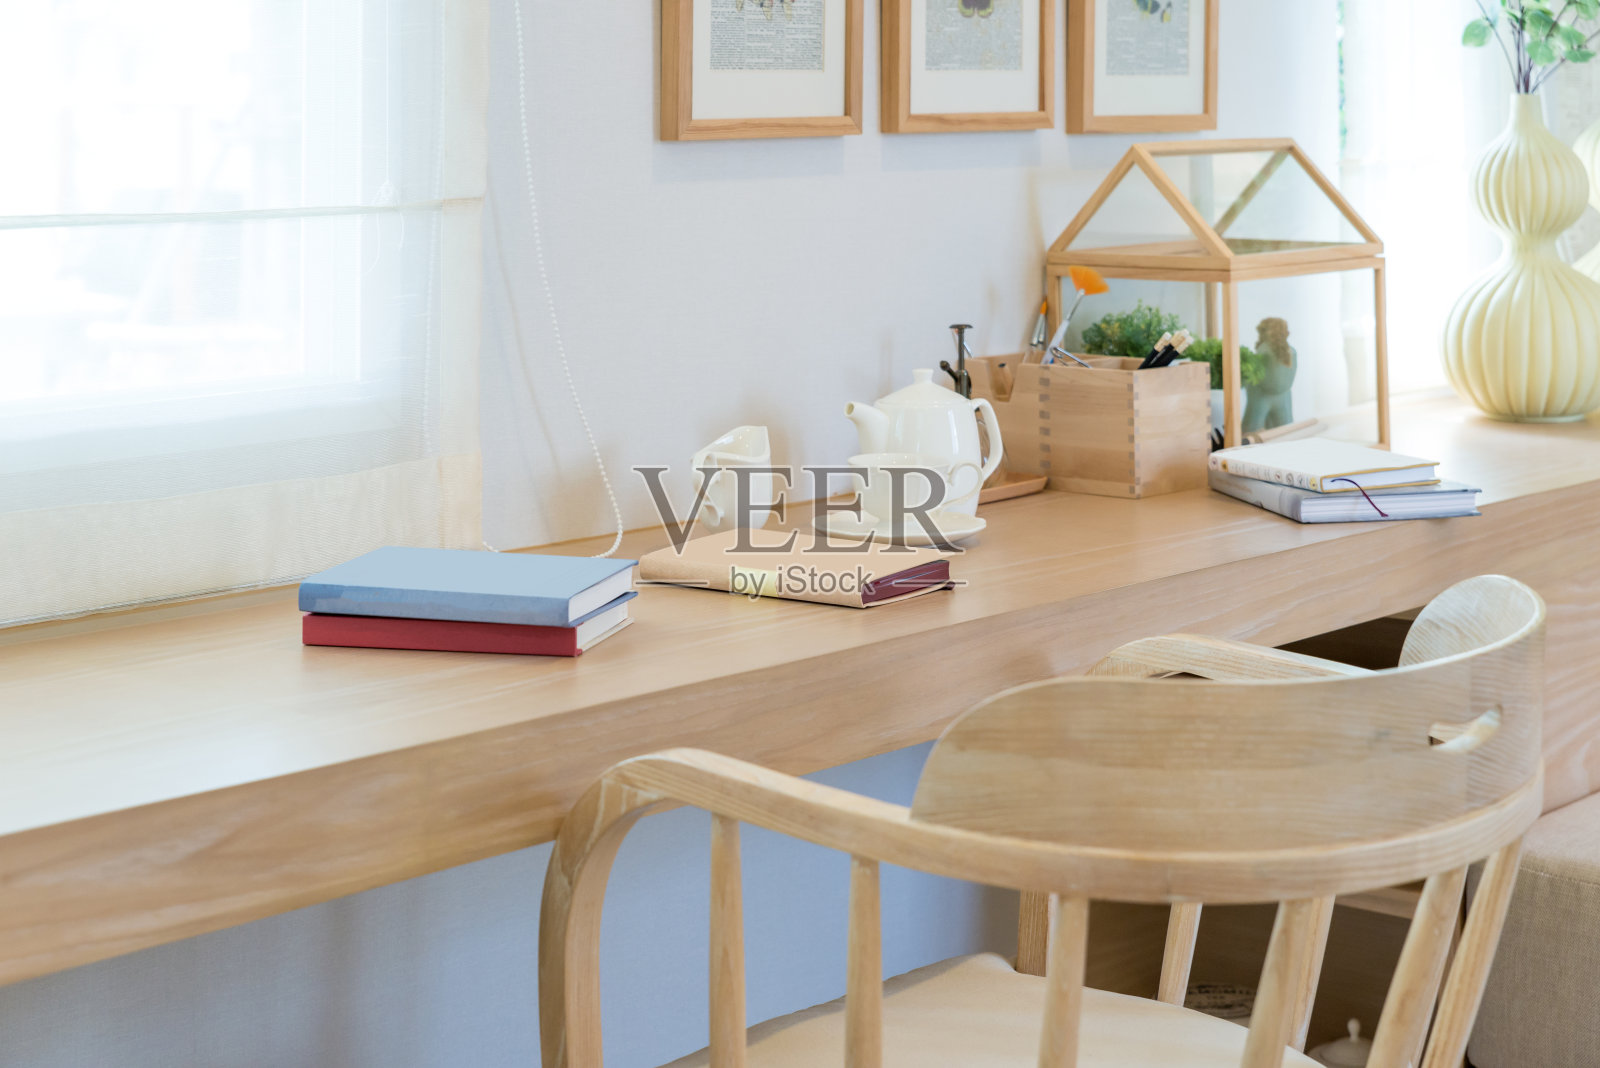 书、咖啡杯、瓶罐放在家里装饰的木桌上。读角室内房间概念。照片摄影图片